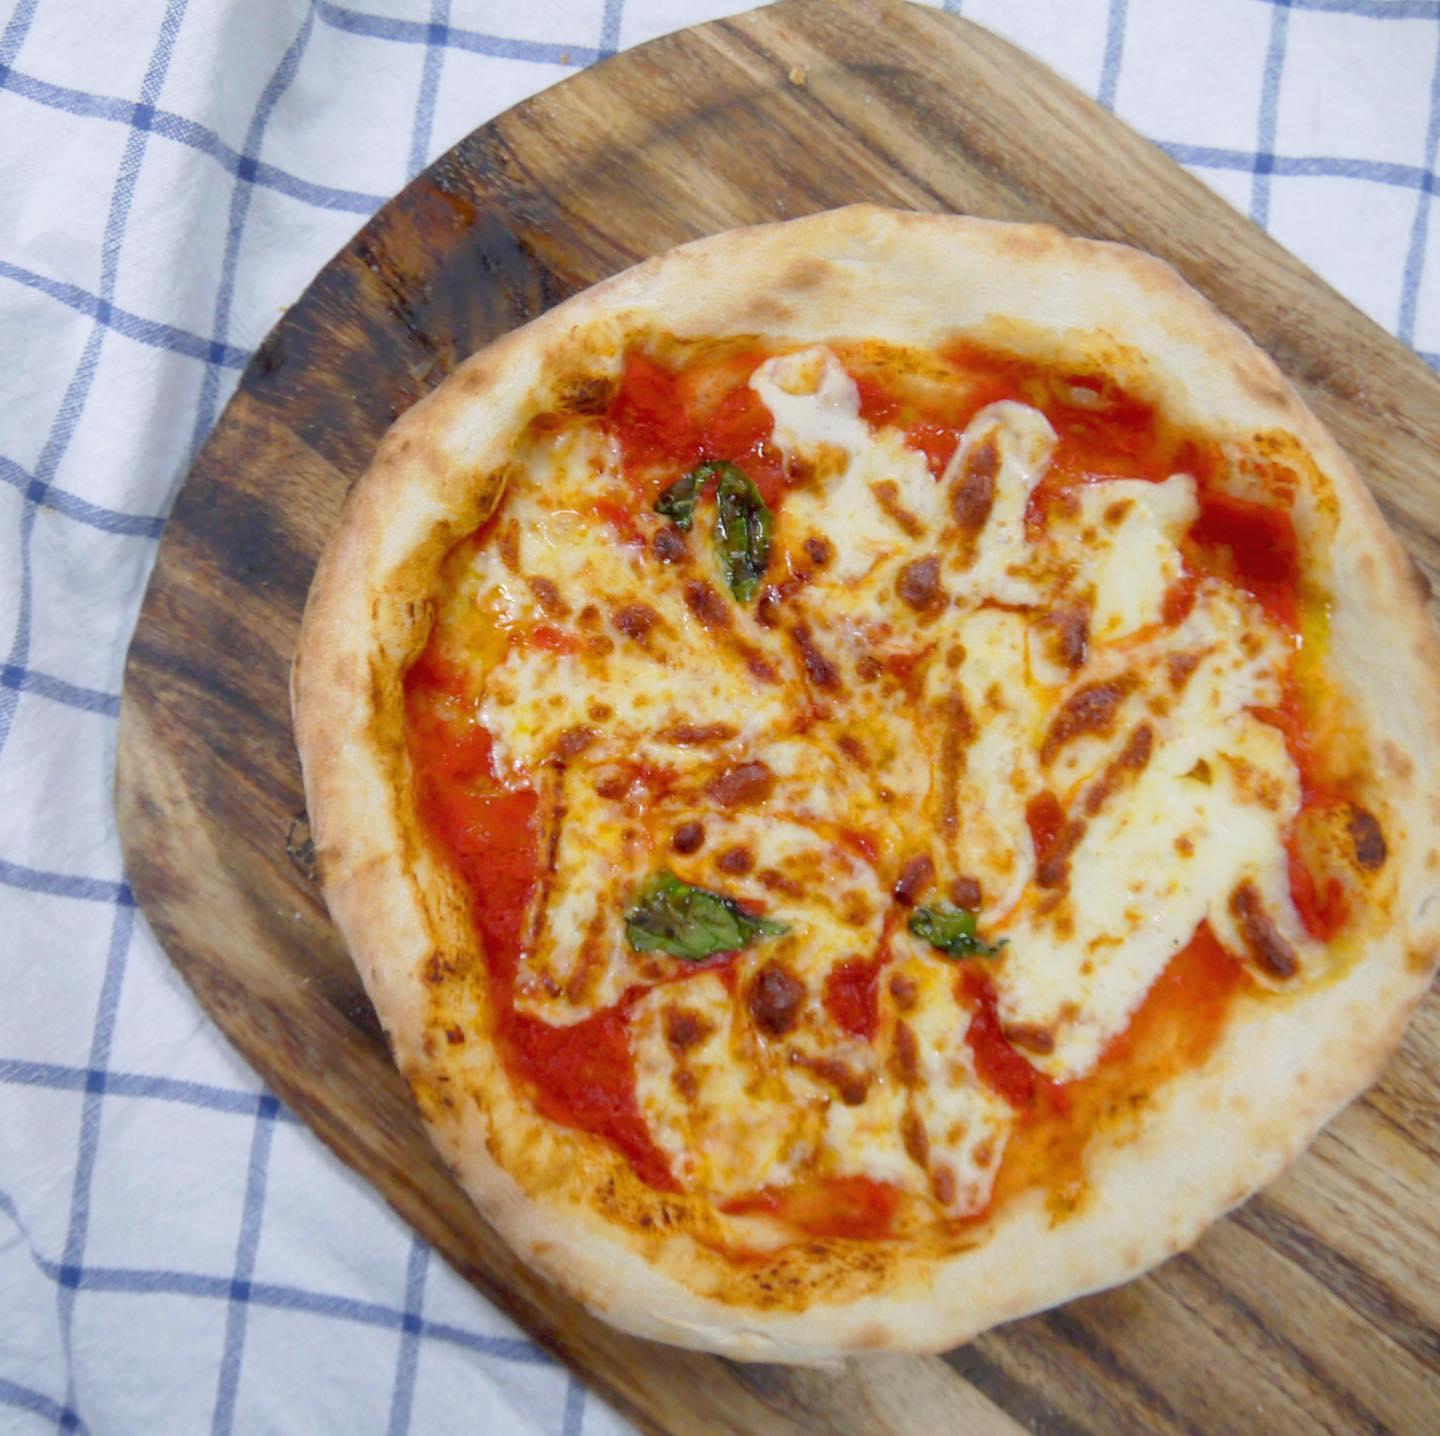 **716KITCHEN2020.7.16 open!ピザ窯をのせたフードトラック"ナナイロキッチン"北近畿を中心に、ピザ窯で焼いた本格ナポリピッツァをお届けします！・・メインメニューのひとつ、【マルゲリータ】シンプルなトマトソースとチーズの相性が最高です・・虹を見たときのようなハッピーと、ときめきを届けたい！このトラックを見つけた人たちがちょっとだけ幸せな気分になれますように・#foodtruck #pizza #napoli #napolipizza #event #takeout #716kitchen#ナナイロキッチン #フードトラック #キッチンカー #出張サービス #ピッツァ #ナポリ #ナポリピッツァ #テイクアウト #ケータリング #パーティー #お祝い #本格 #北近畿 #福知山 #舞鶴 #京丹後 #宮津